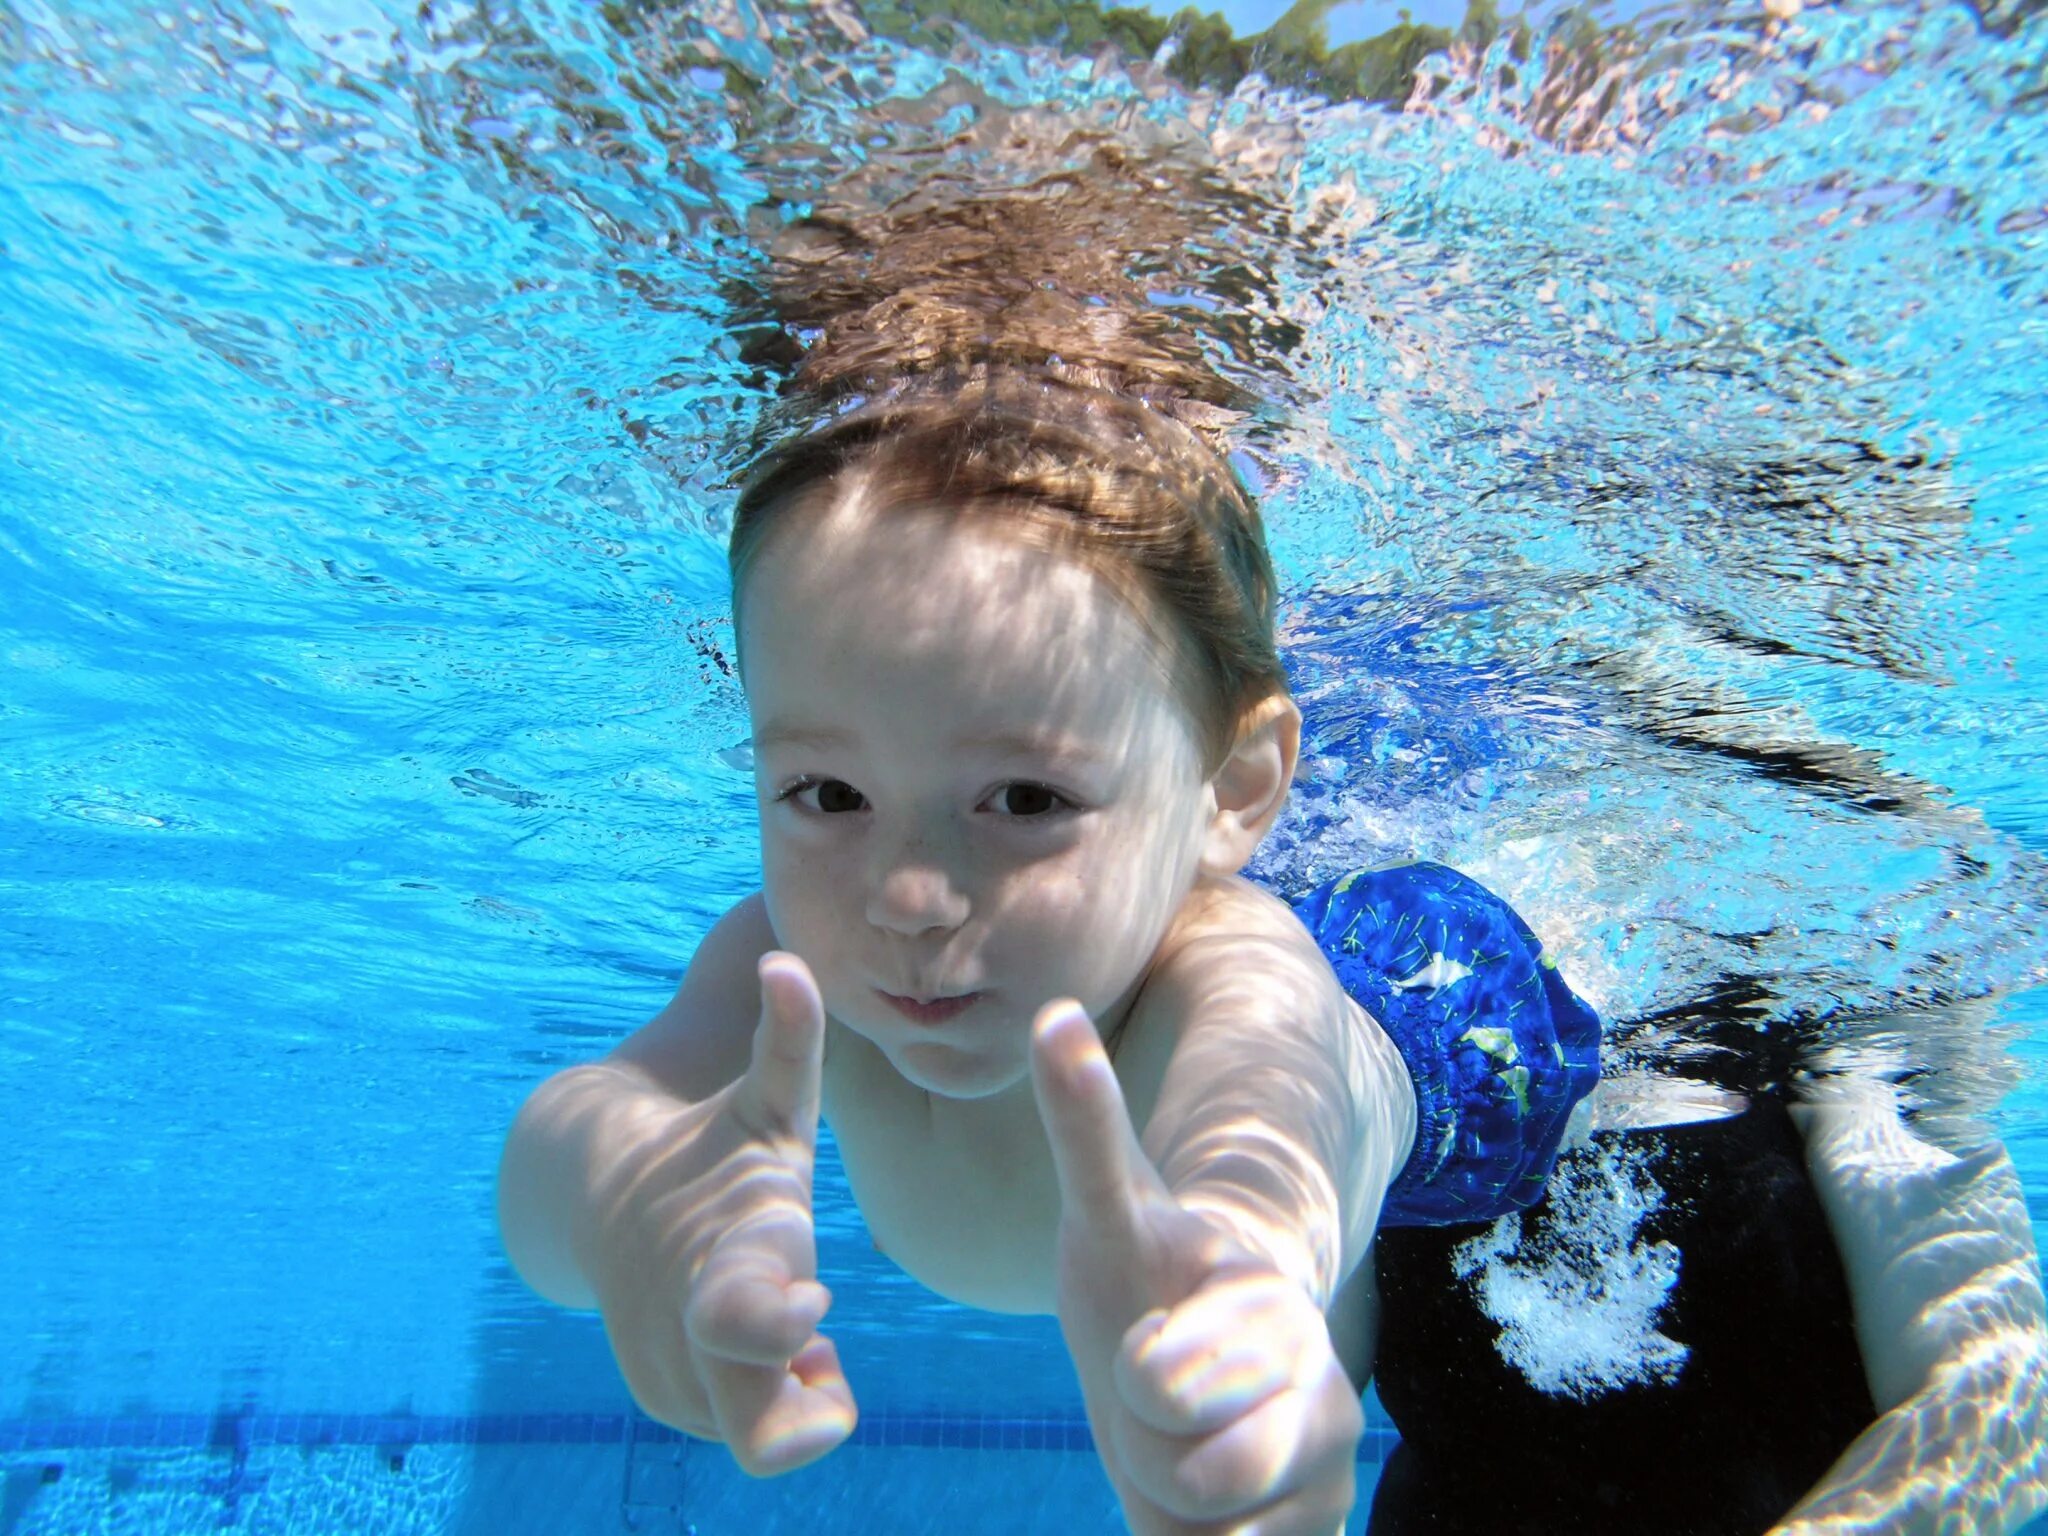 Купаться в чистом бассейне. Дети в бассейне. Плавание в бассейне дети. Фотосессия в бассейне детей. Дети плавают в бассейне.